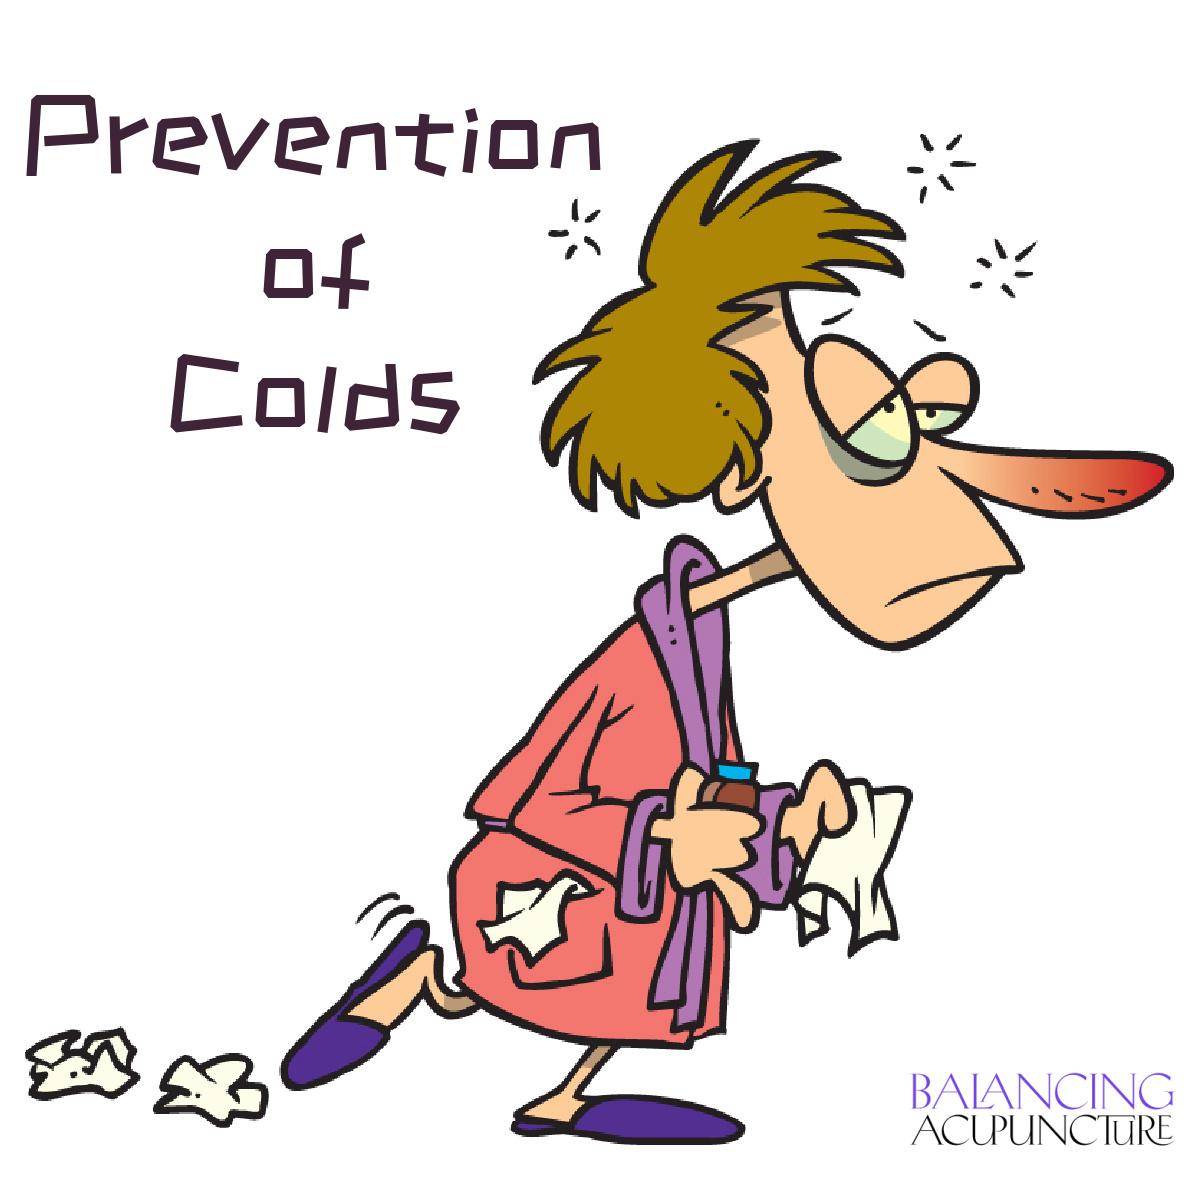 Prevention of coldsjpg